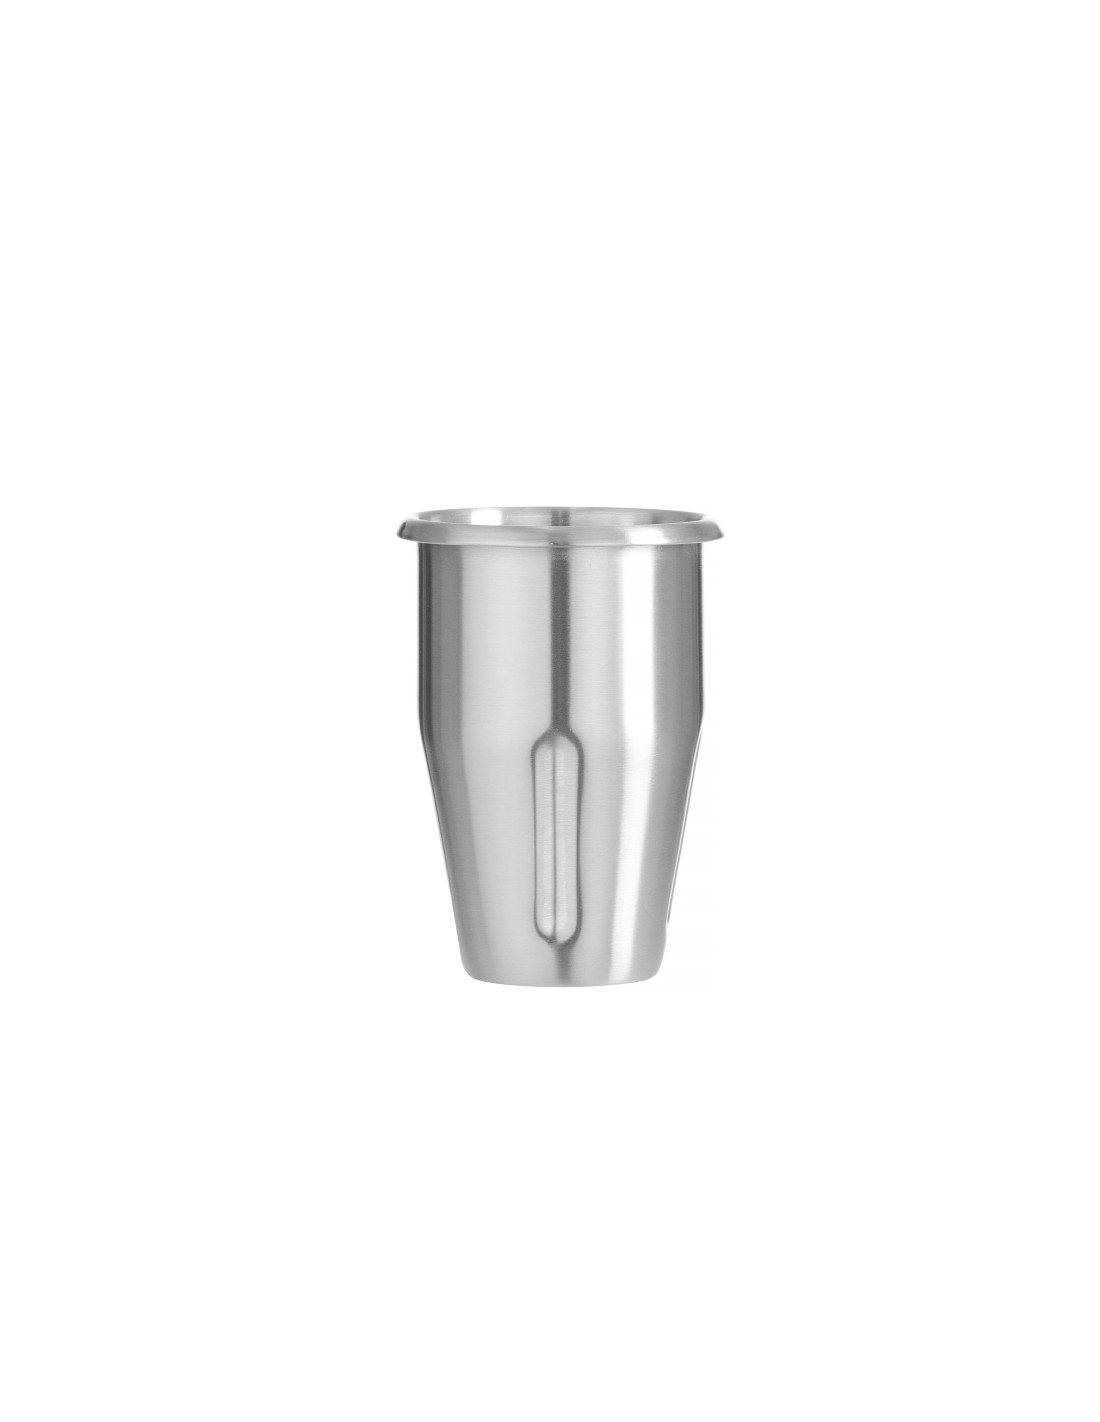 Stainless steel cup - For Milkshake blenders - Design by bronwasser